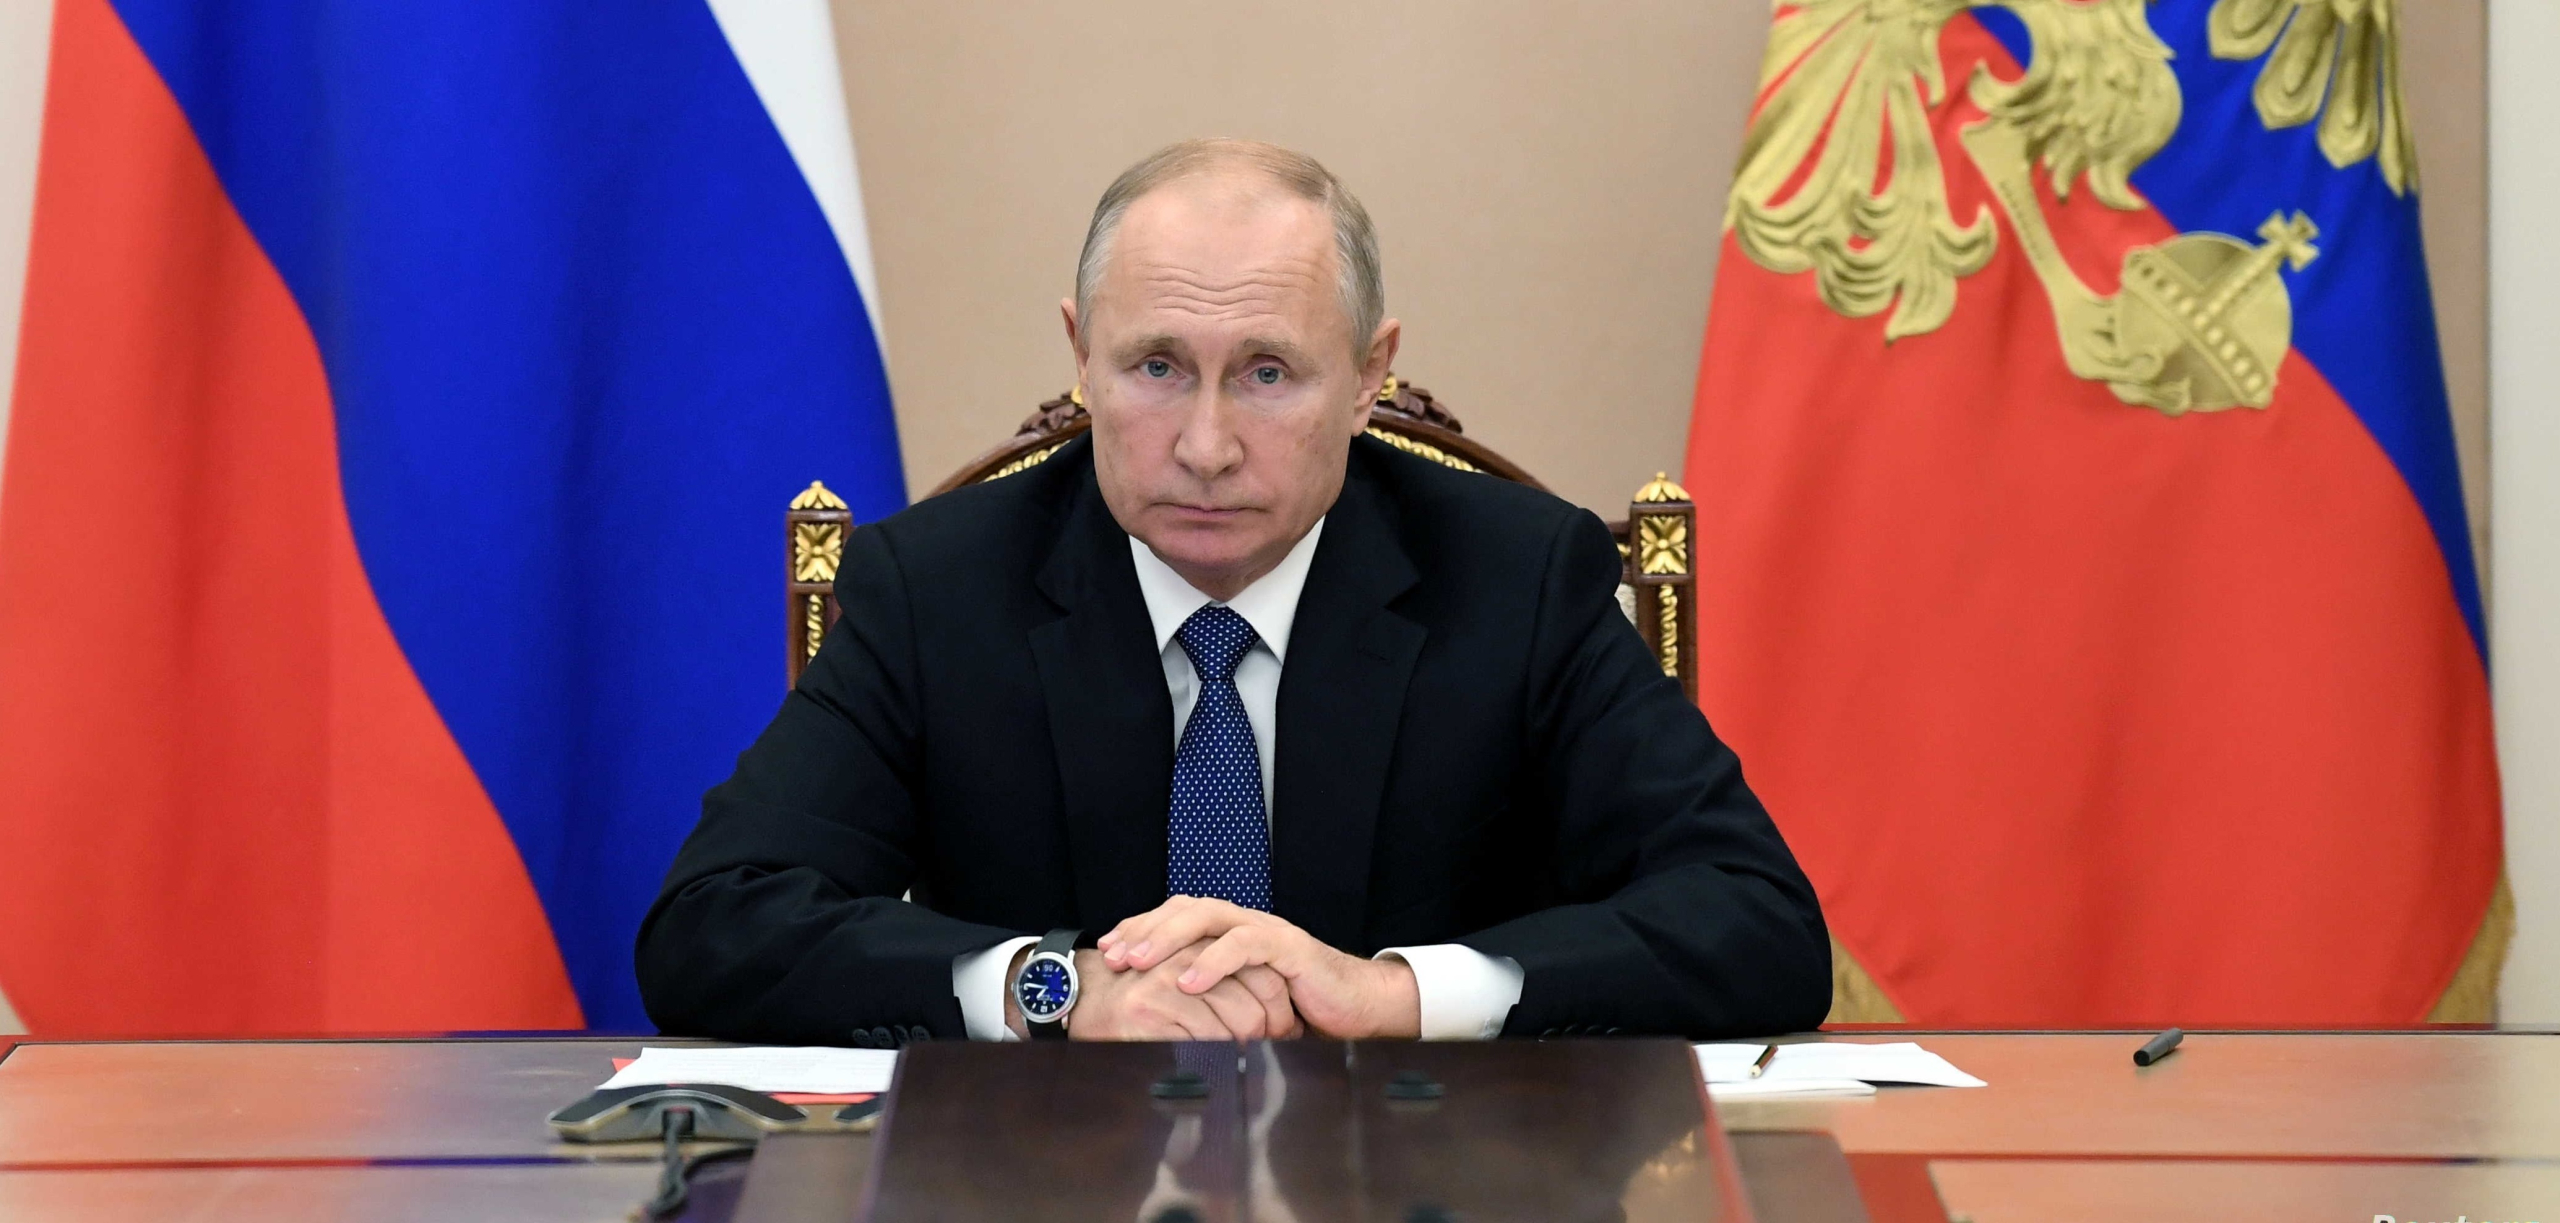 بوتين: روسيا تولي أهمية لتطوير علاقاتها مع الدول الإسلامية